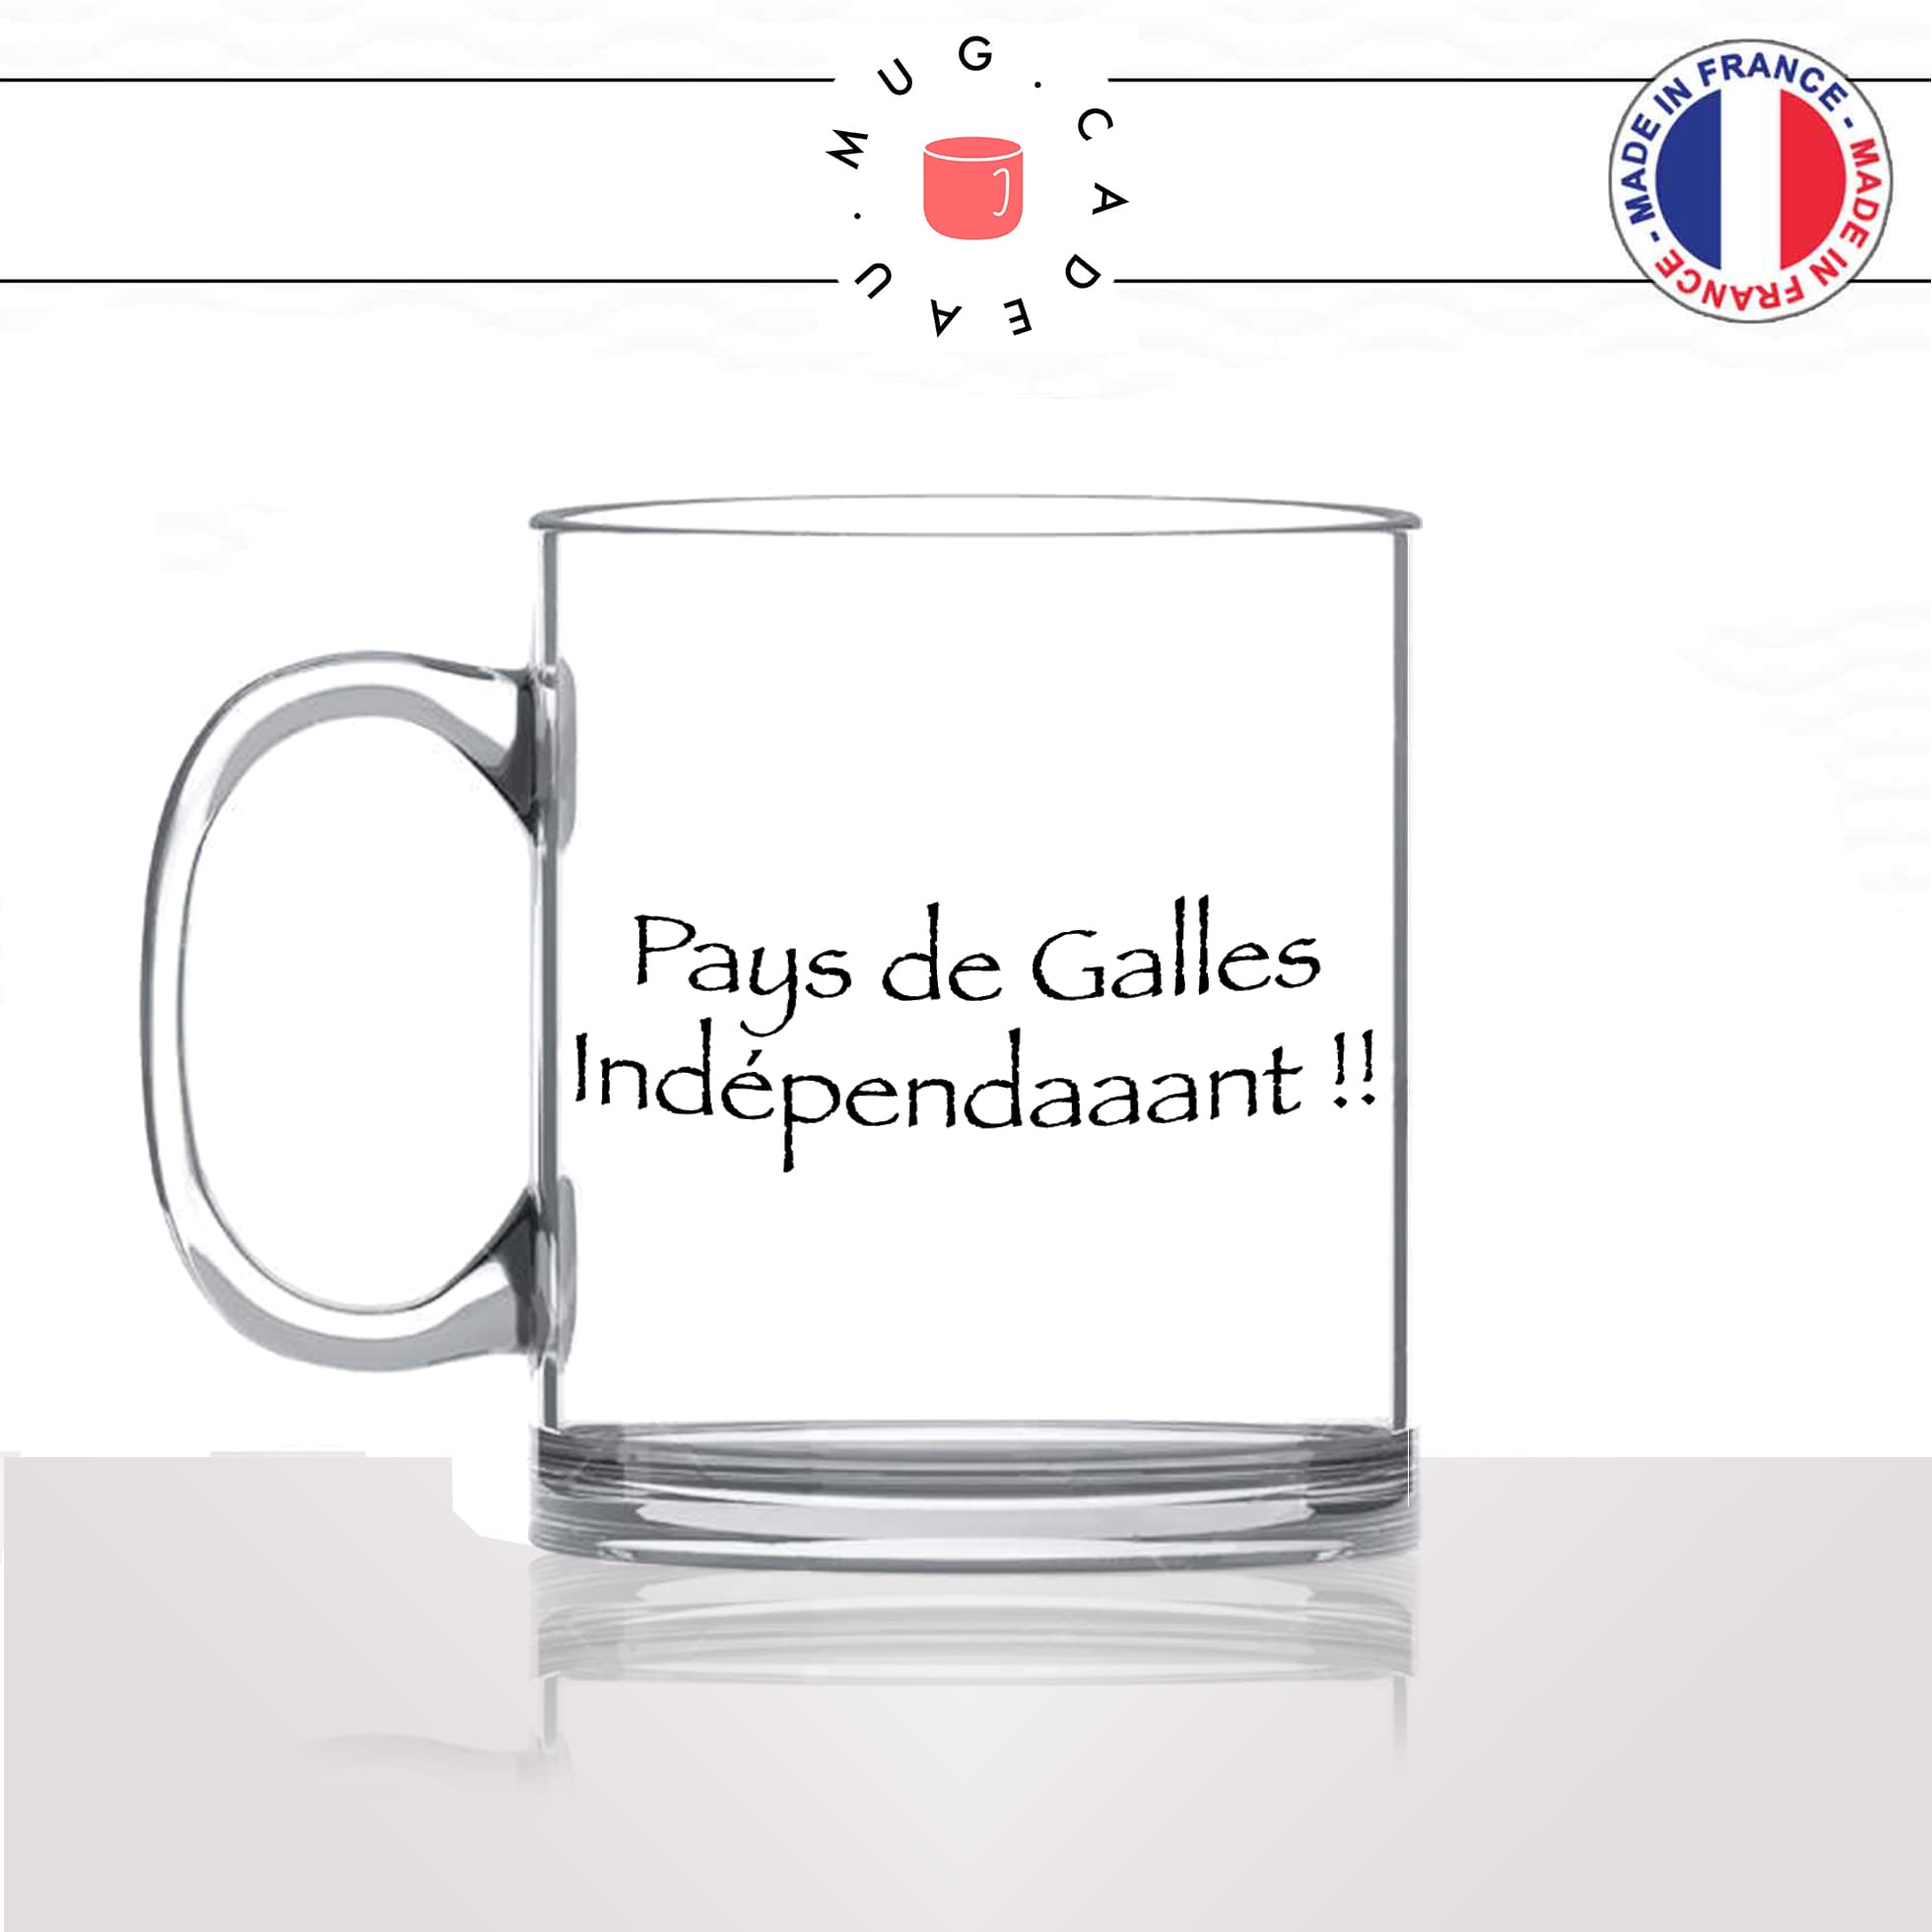 mug-tasse-en-verre-transparent-glass-série-francaise-culte-kaamelott-arthur-pays-de-galles-independant-perceval-idée-cadeau-fun-cool-café-thé